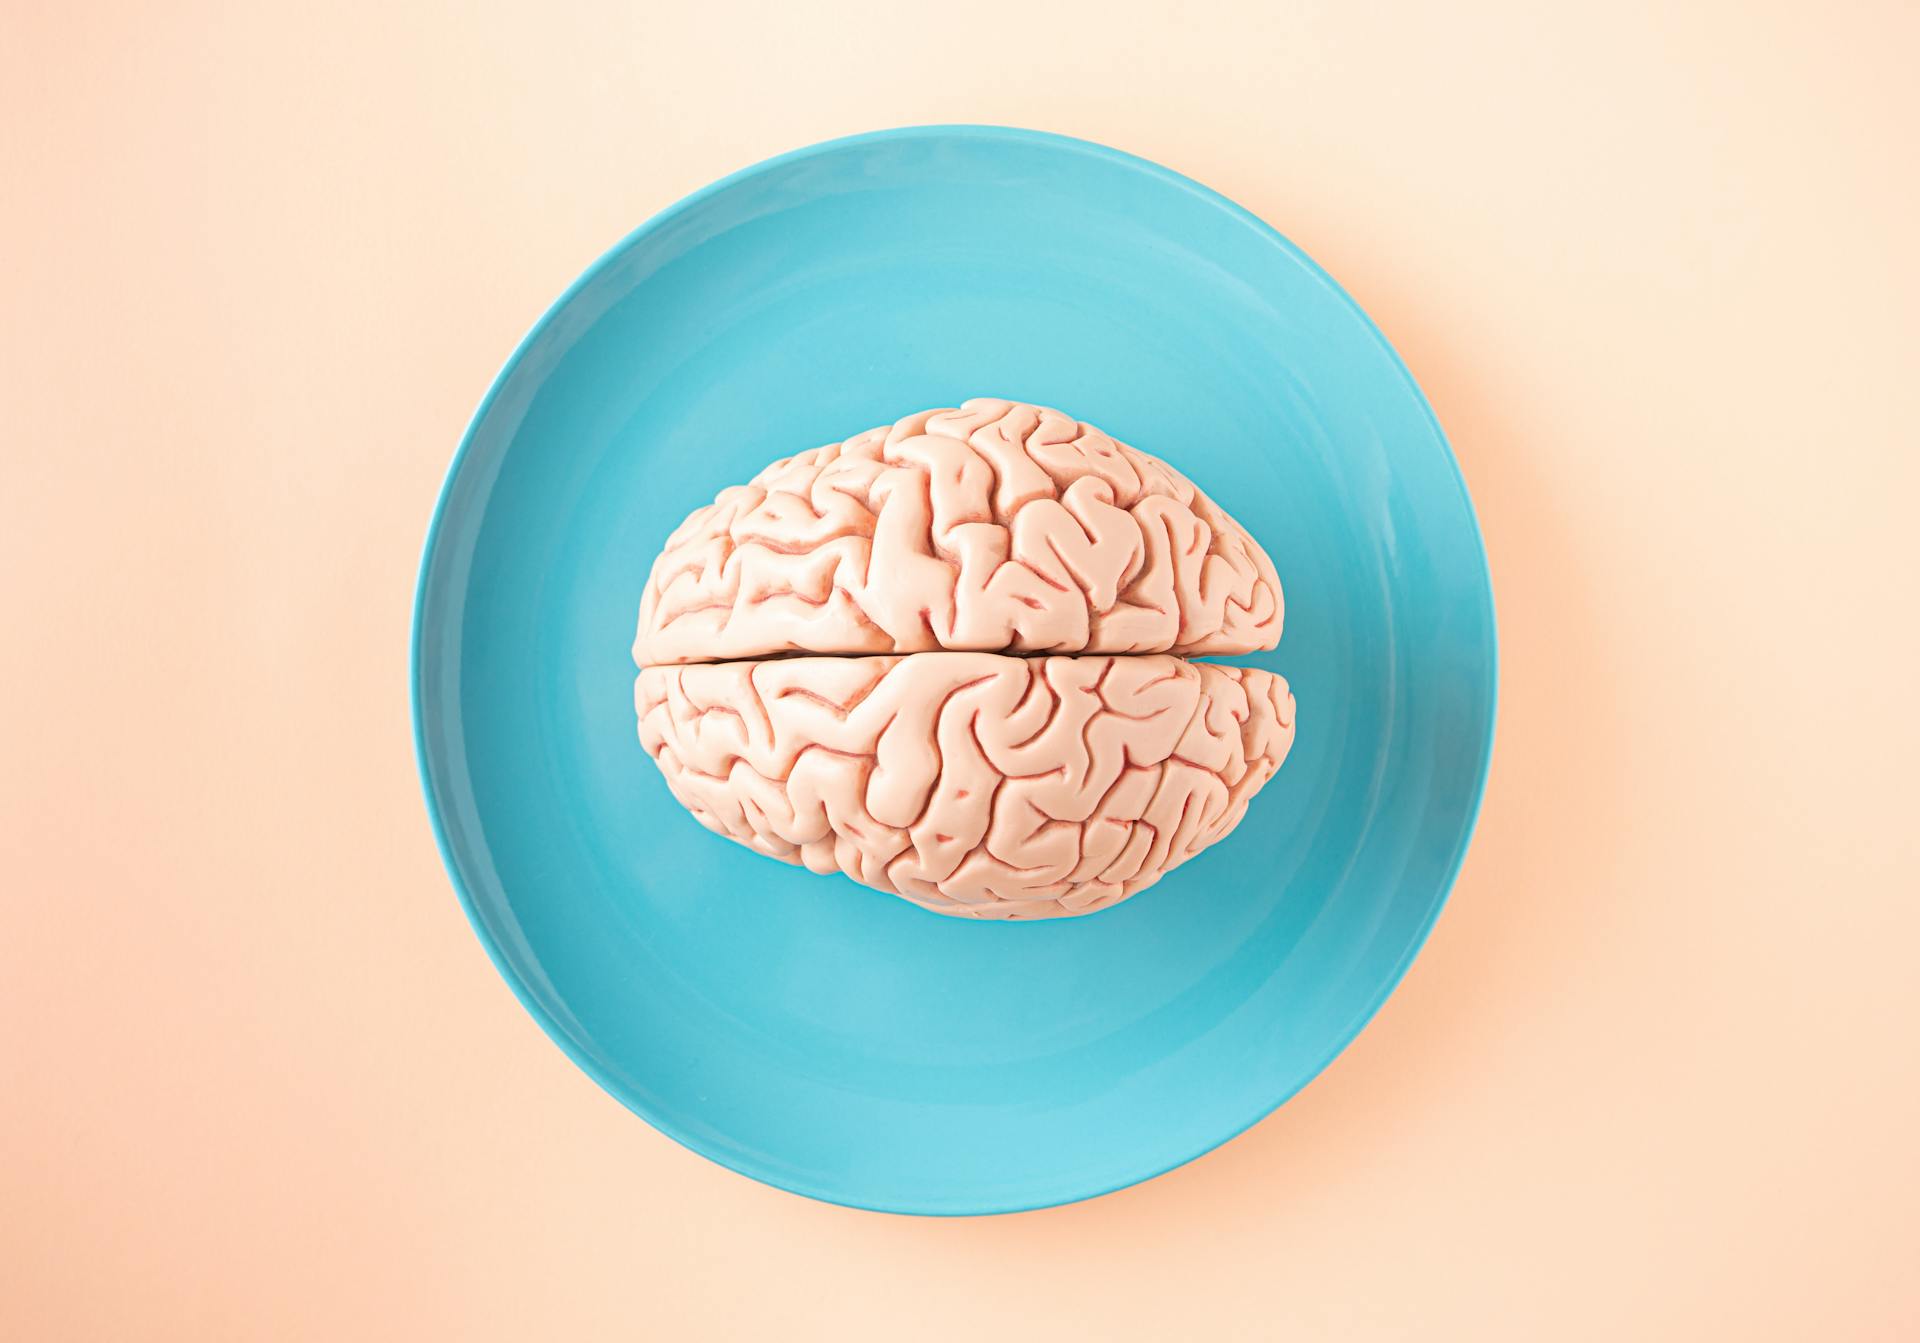 Imagen del cerebro en un plato